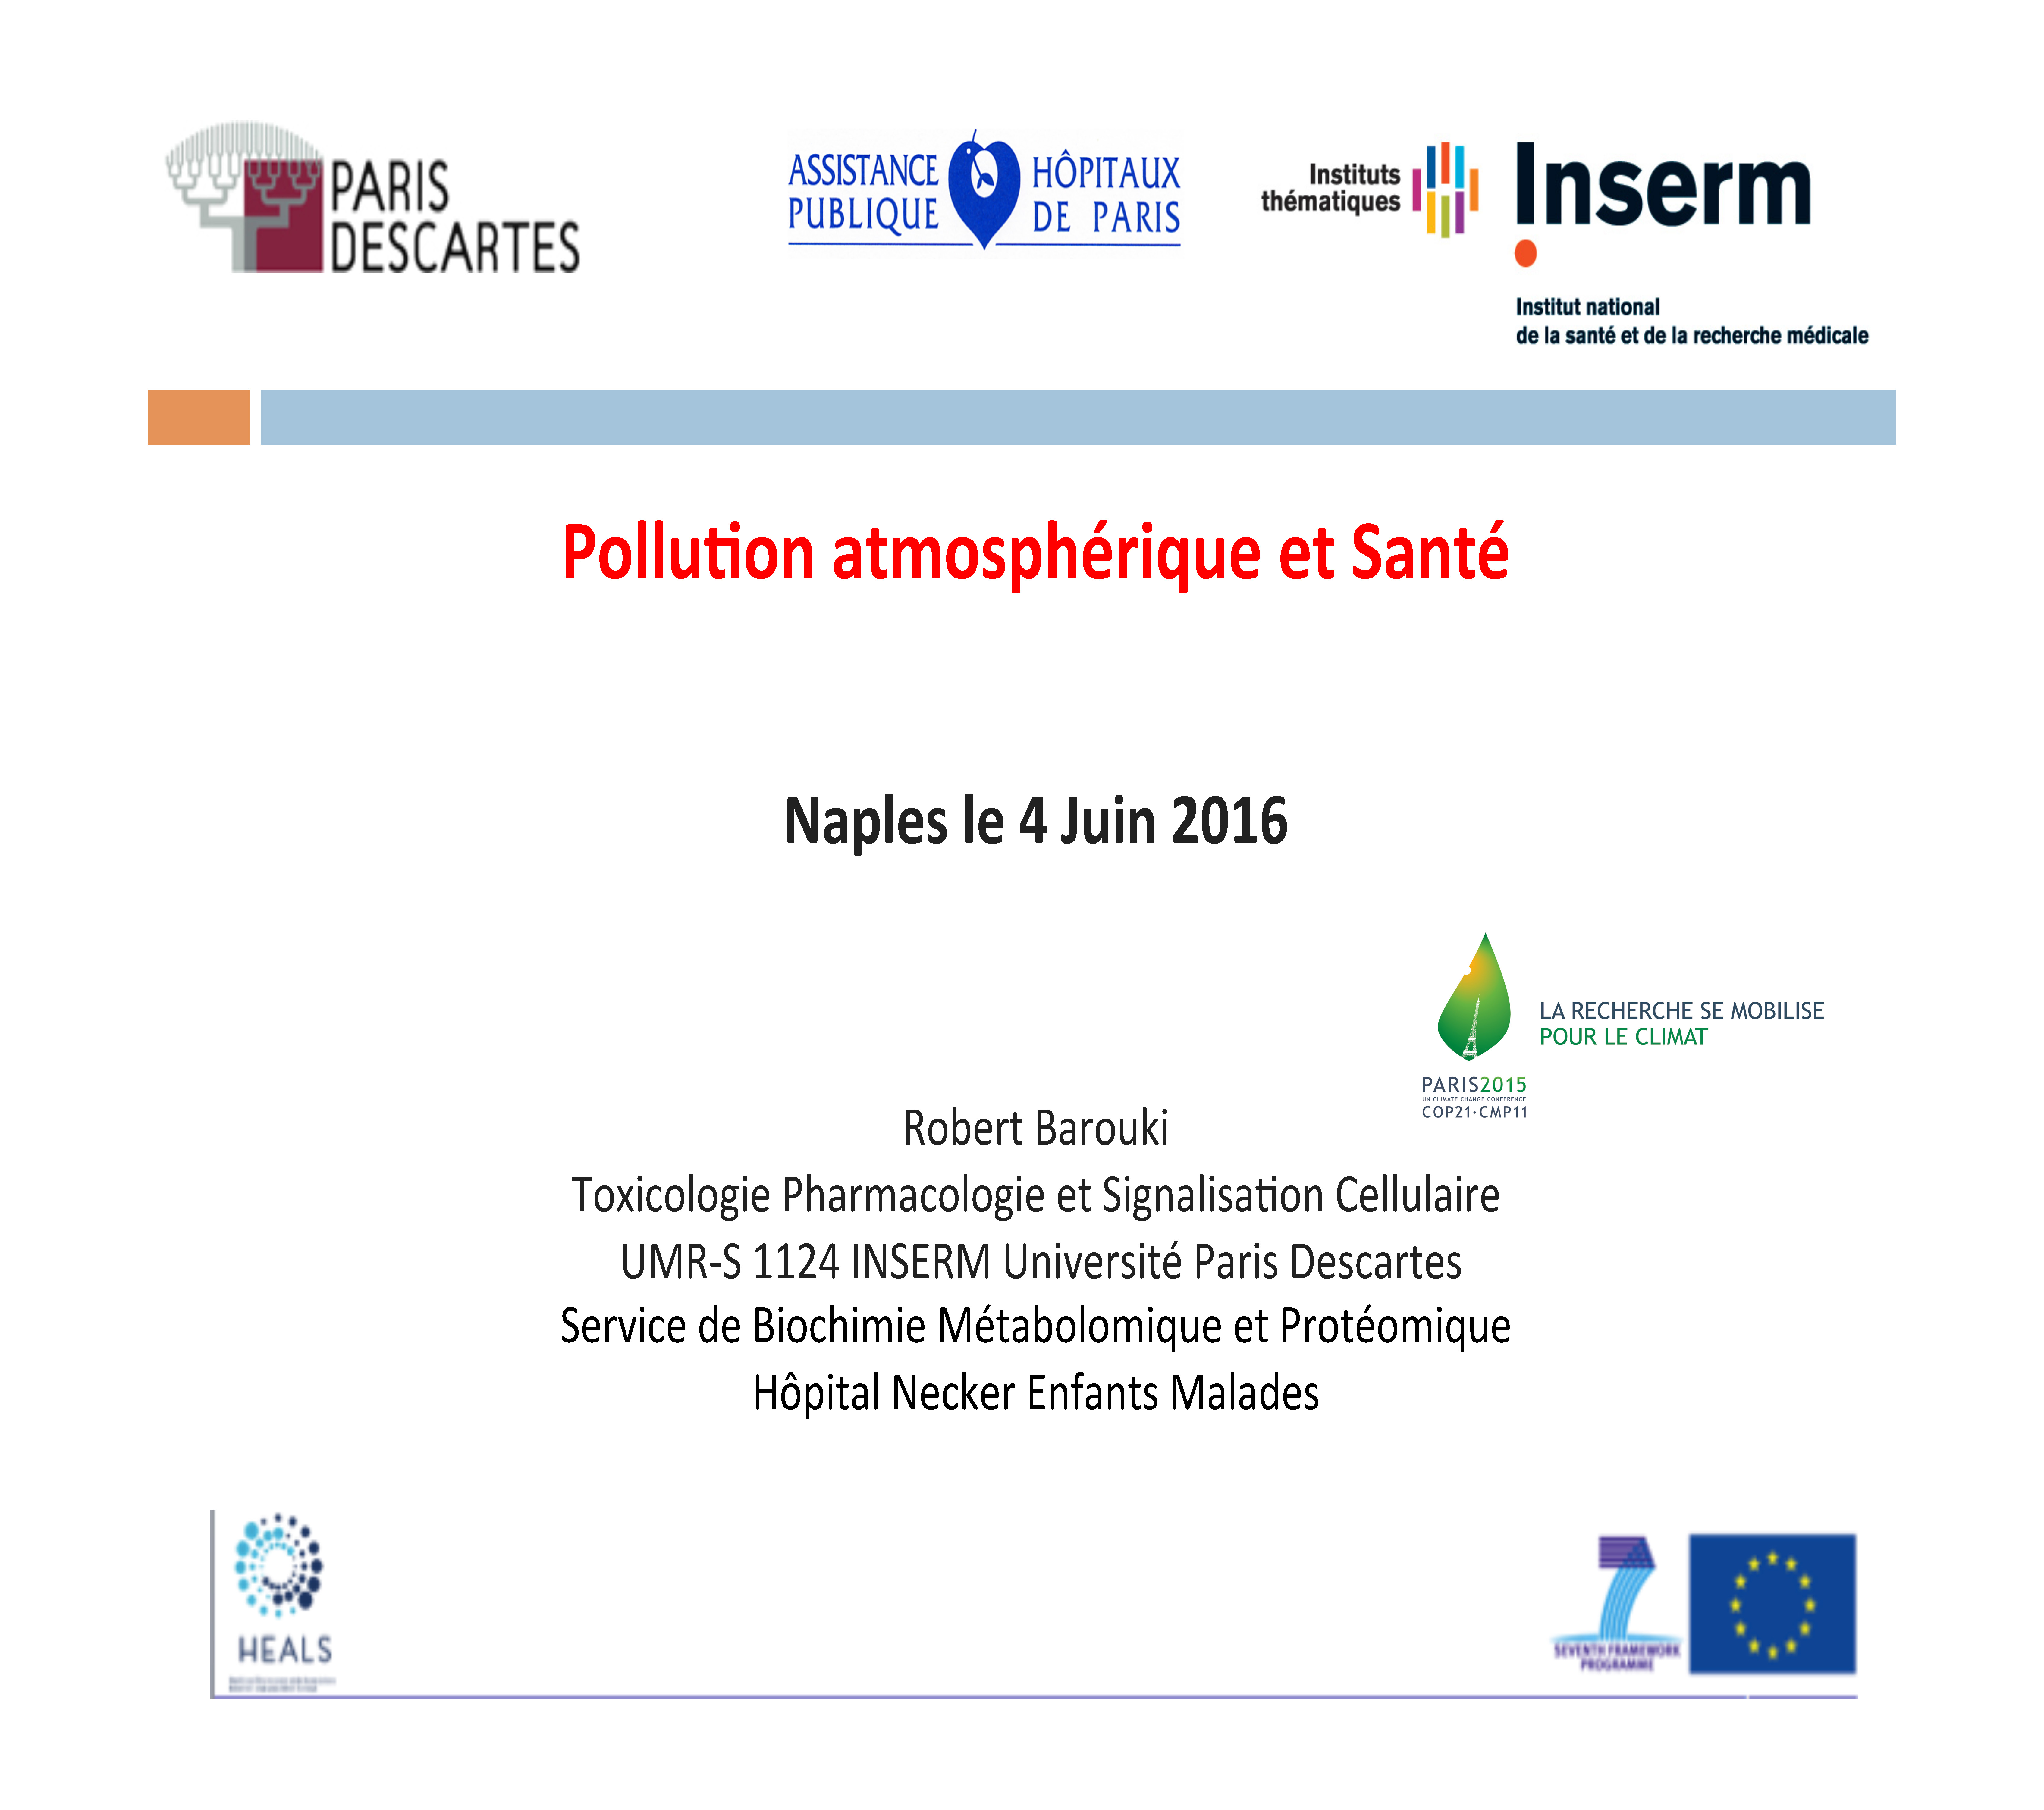 Pollution atmosphérique et santé. Robert Barouki